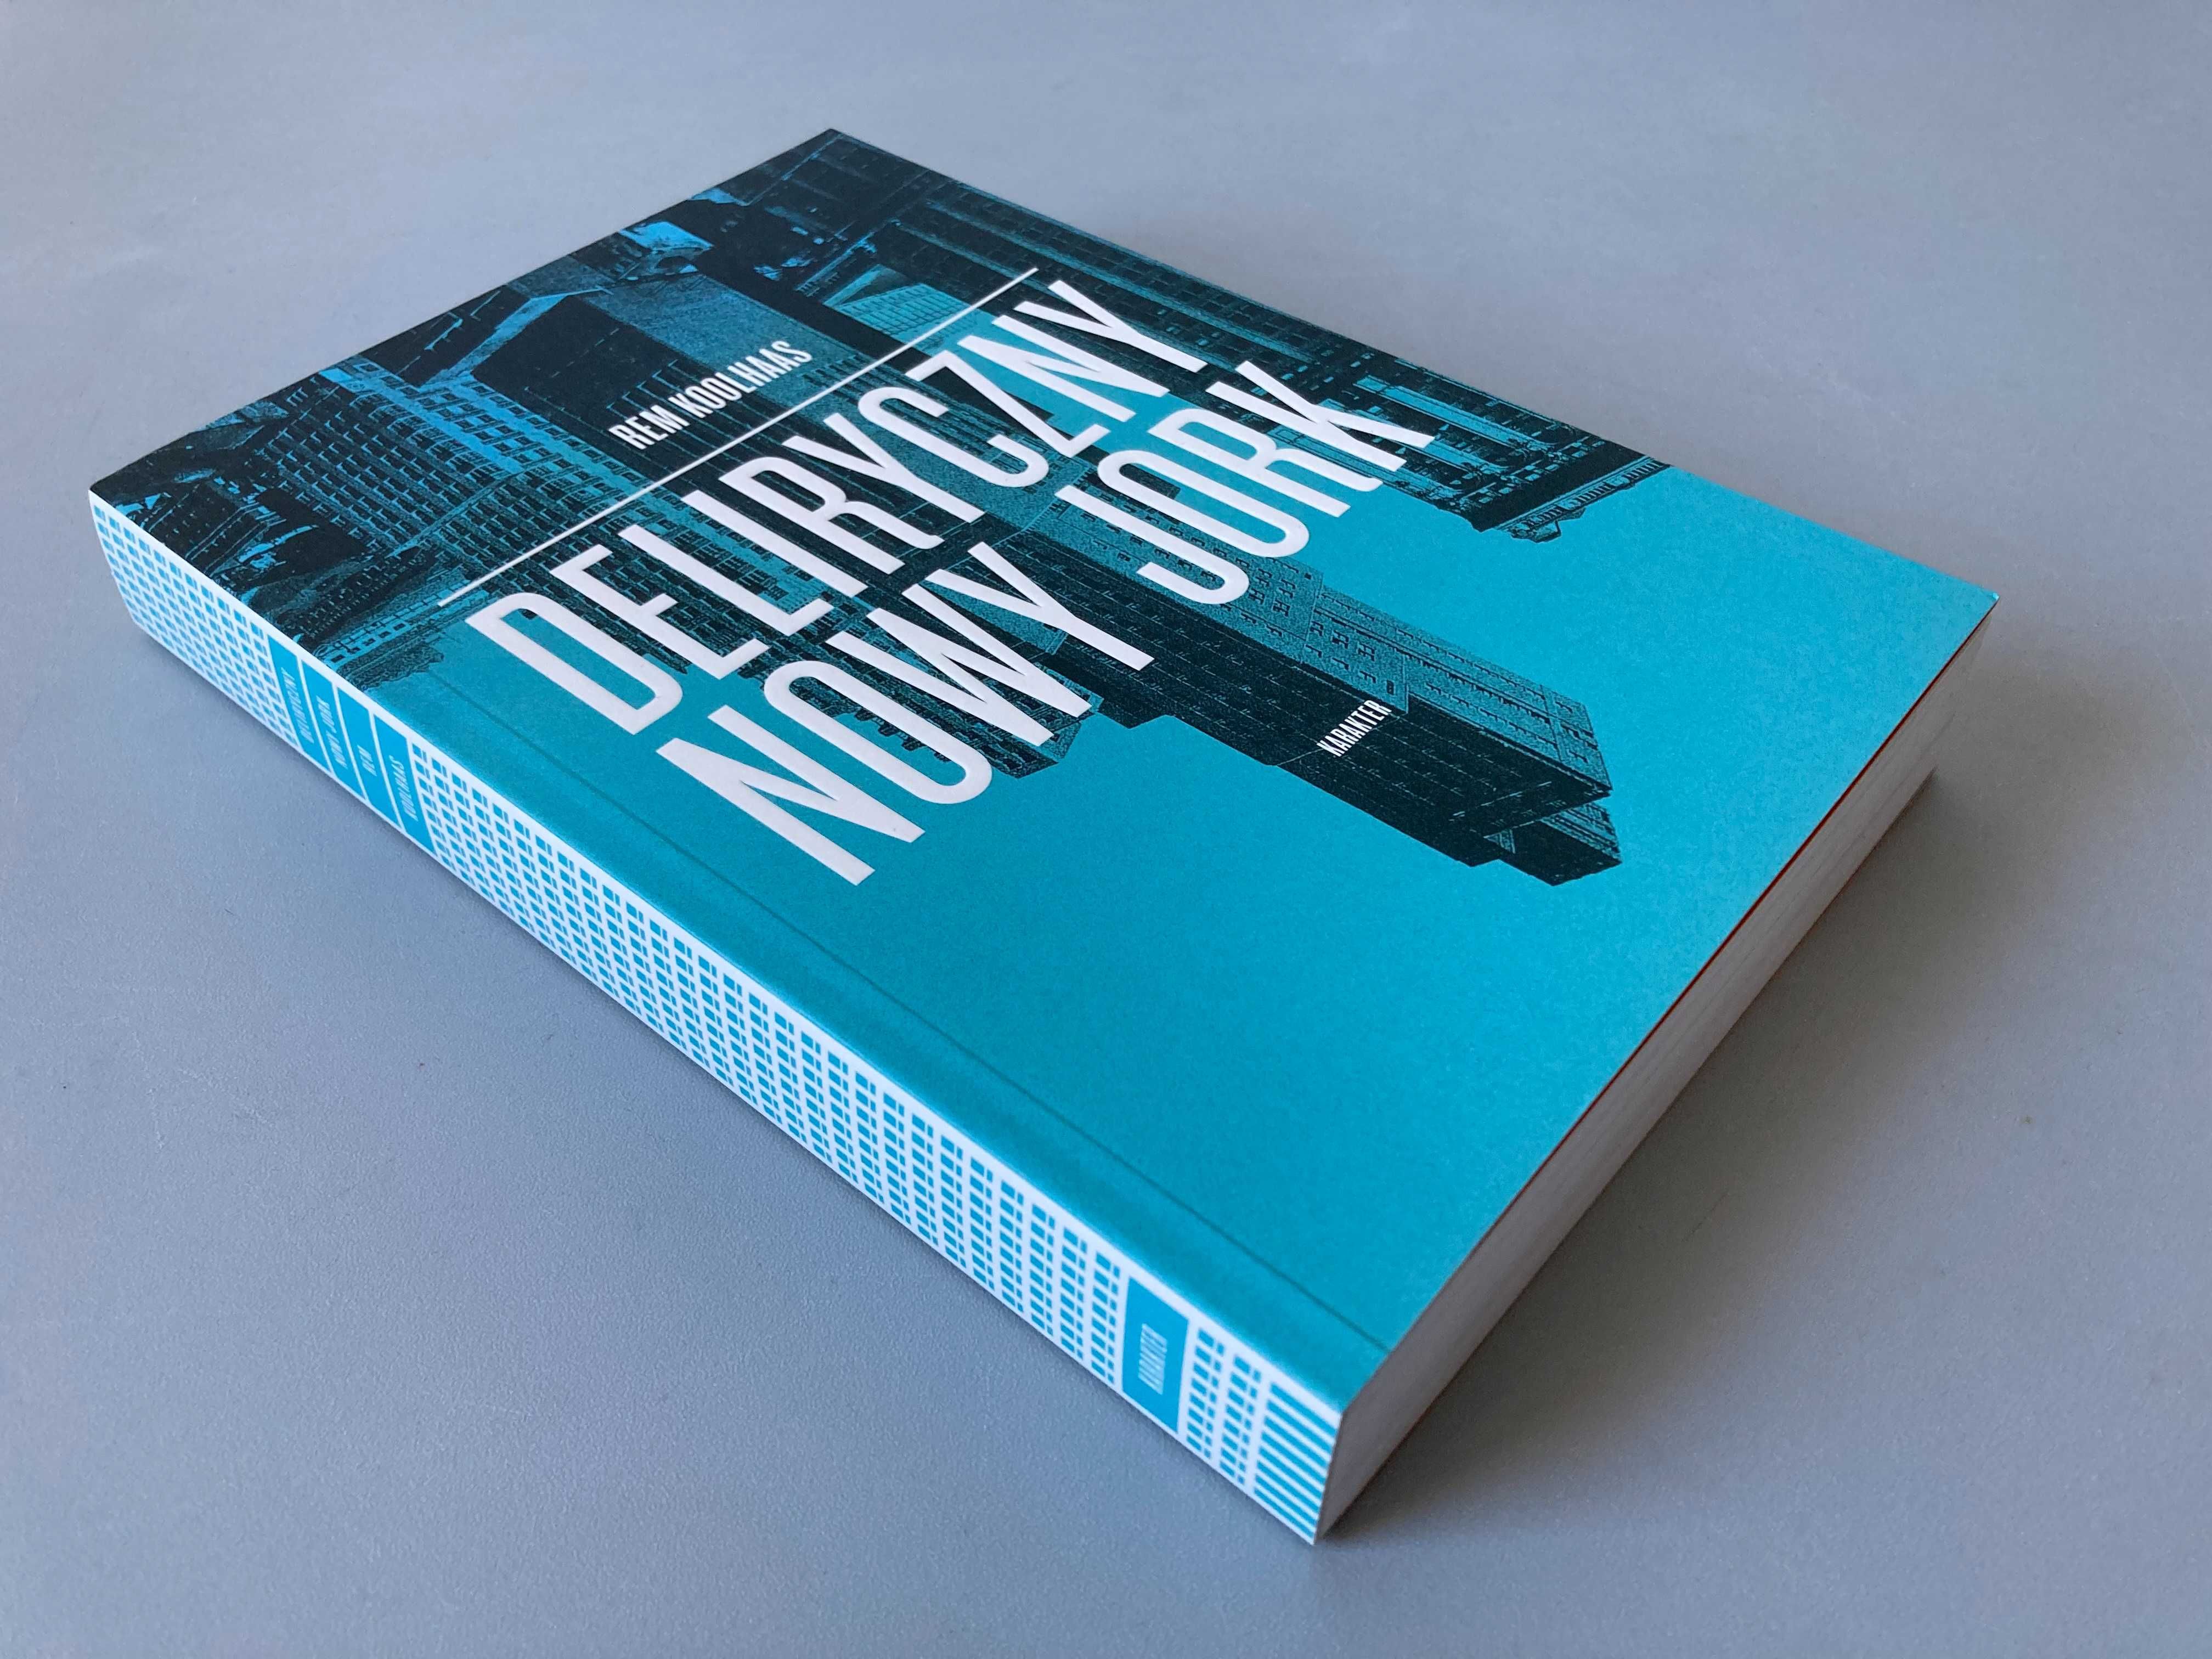 Rem Koolhaas - Deliryczny Nowy Jork | NOWA